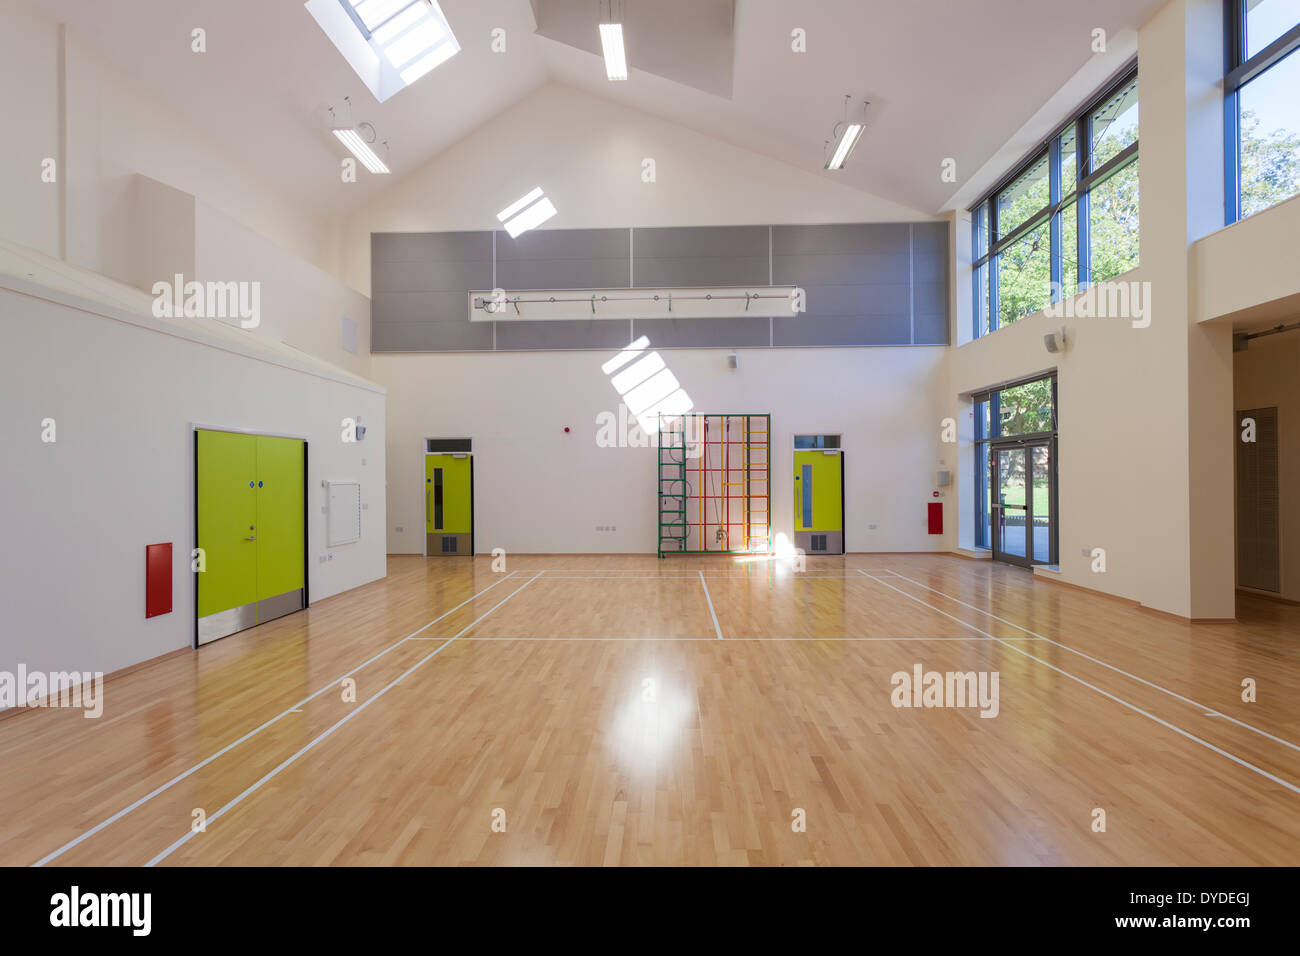 Unbesetzten Grundschule Halle mit hölzernen Fußboden und Spiele Markierungen. Stockfoto